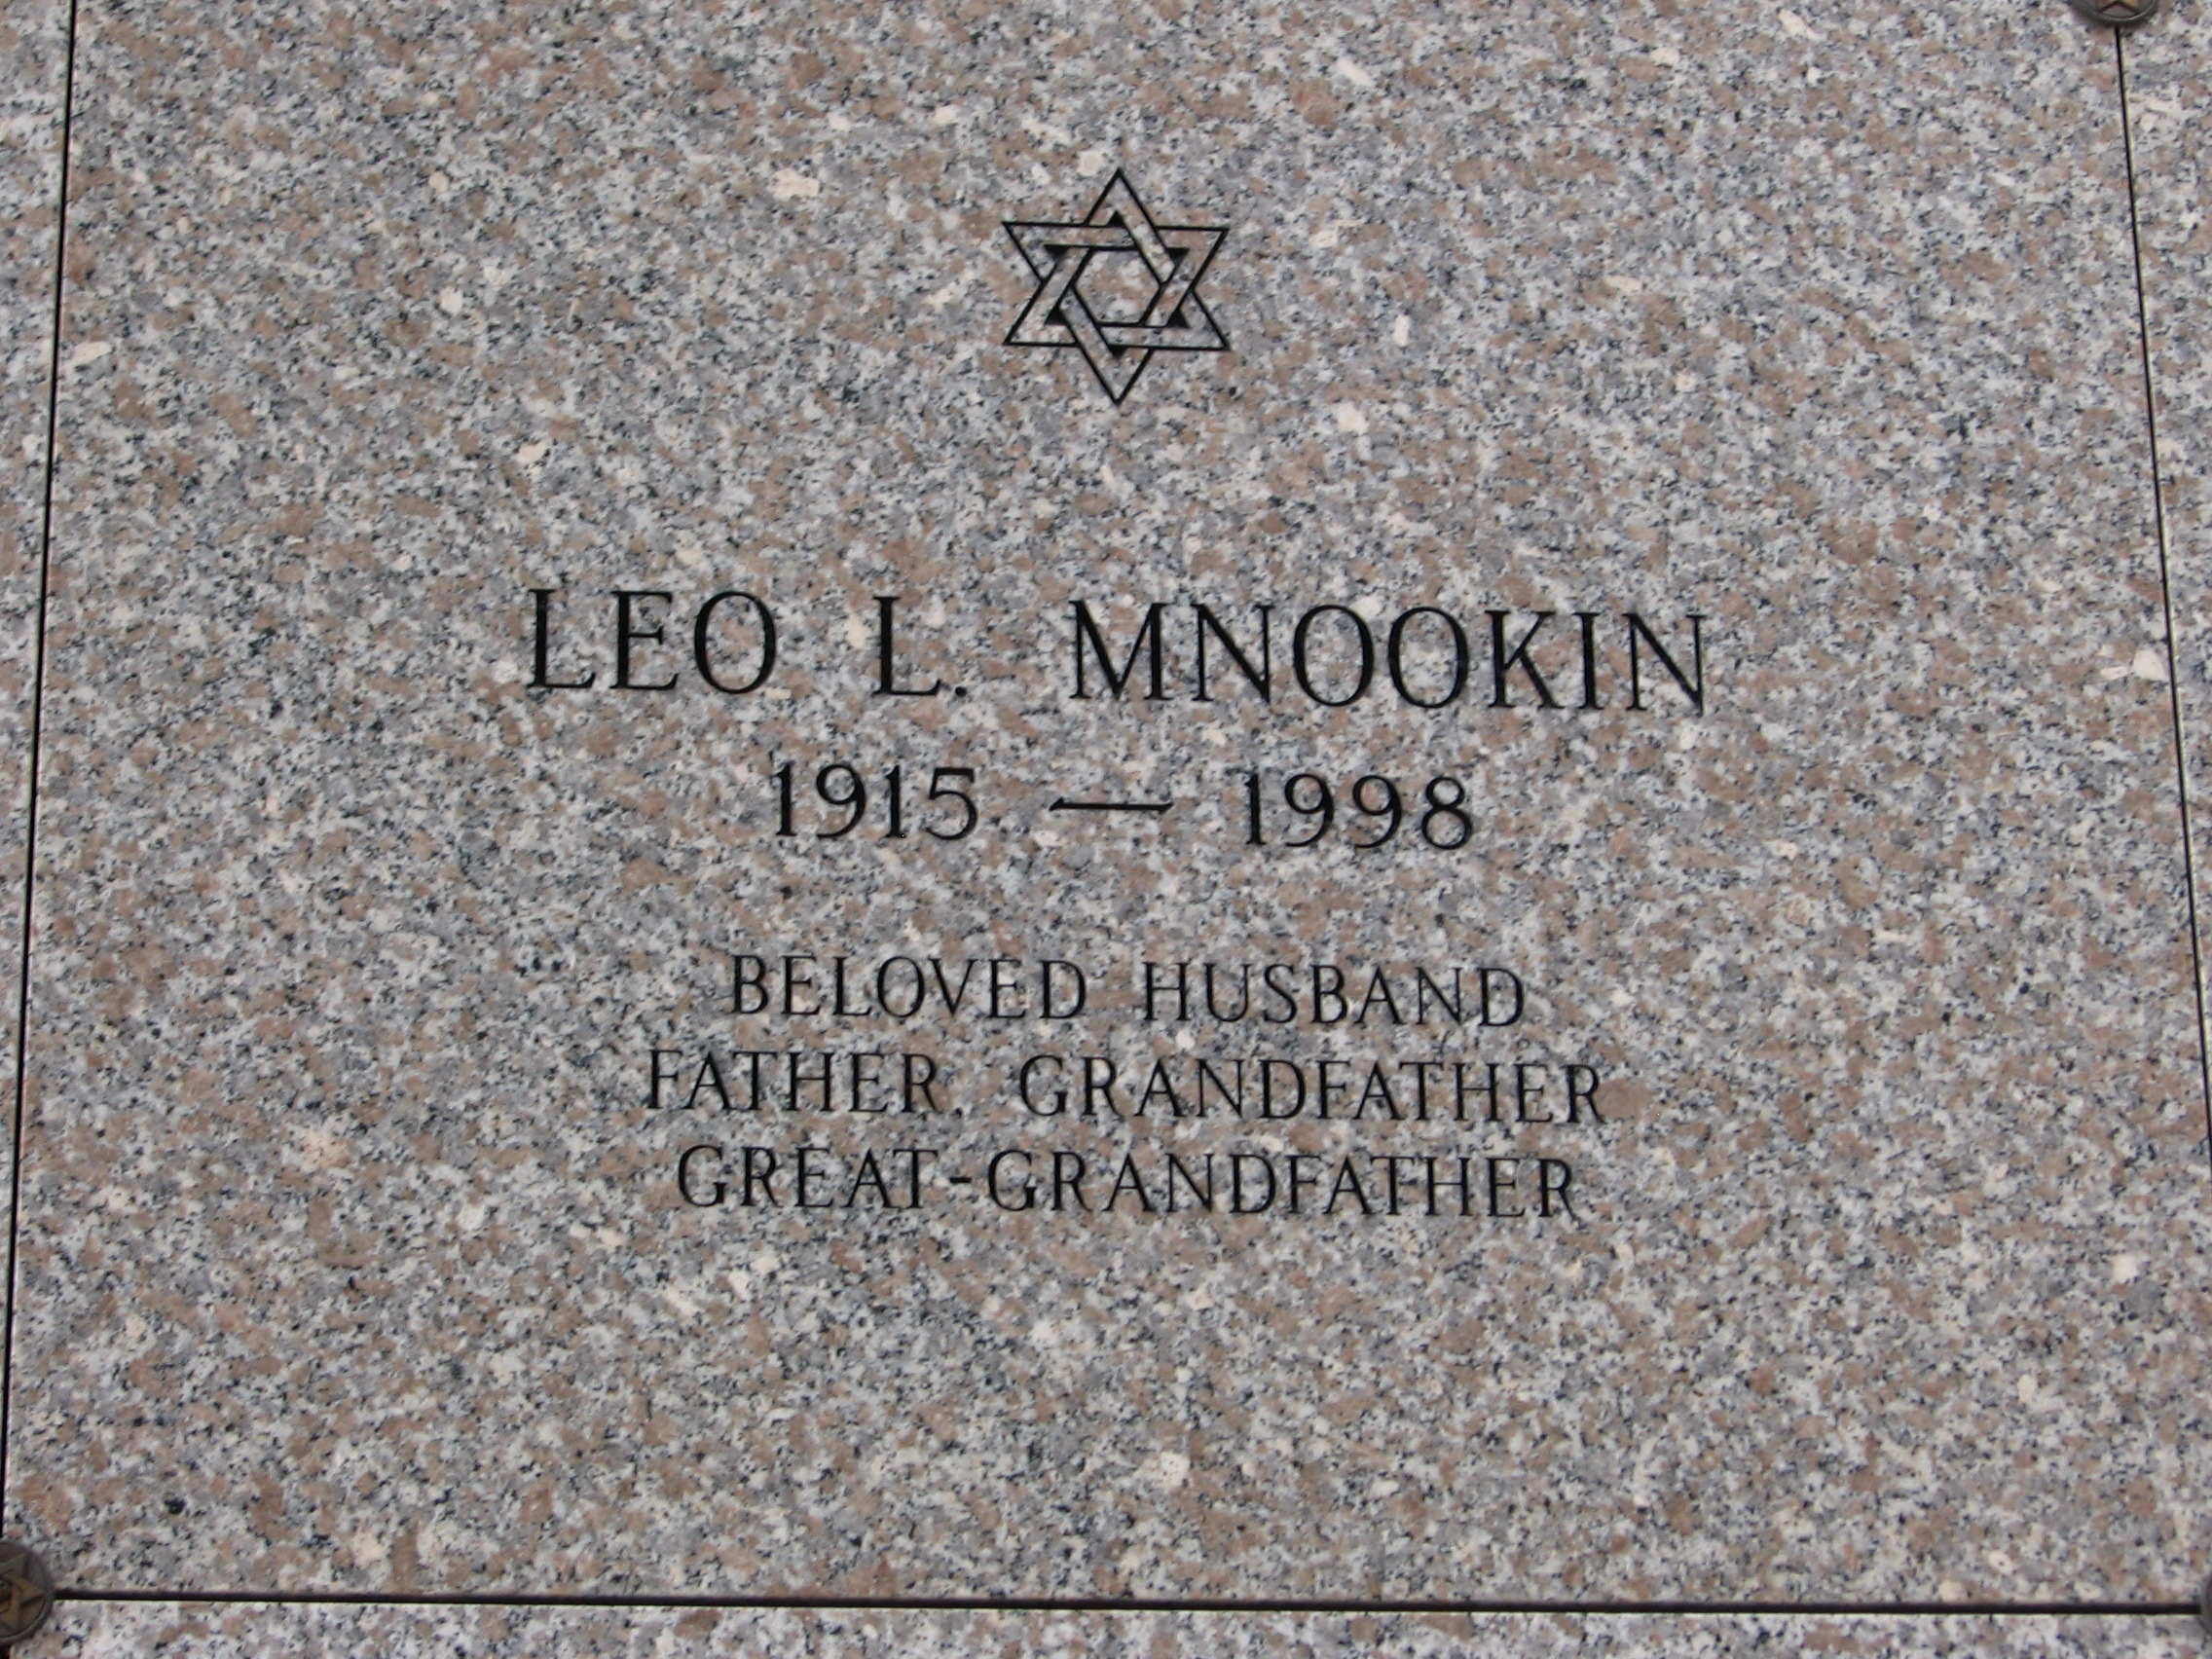 Leo L Mnookin